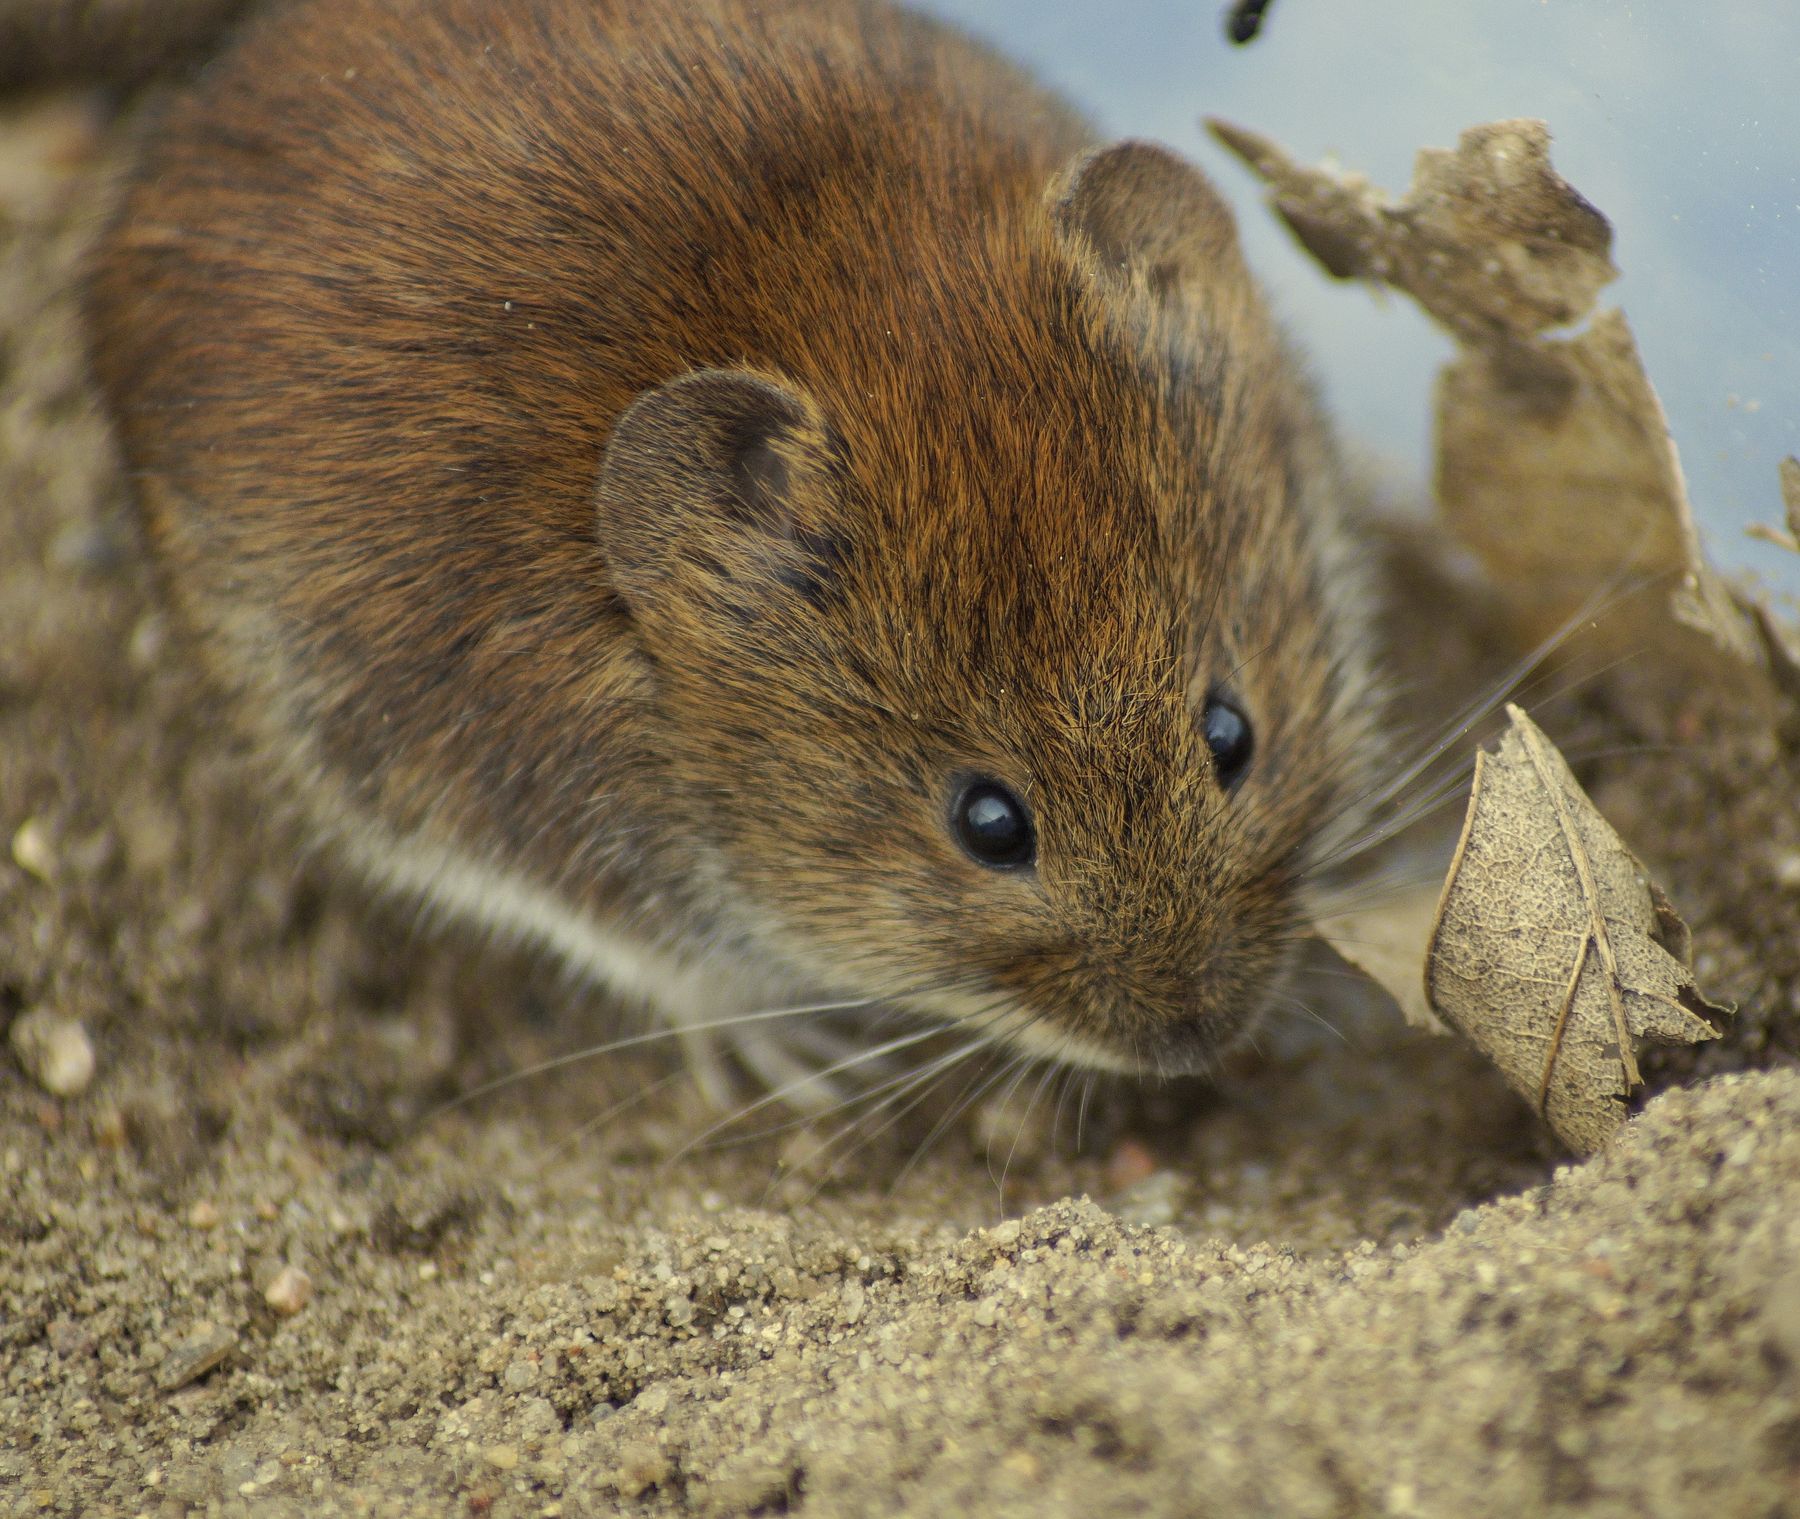 Rötelmäuse sind Wirtstiere für Hantaviren,  die grippeähnliche Krankheiten verursachen © Andrea Linja / Pixabay